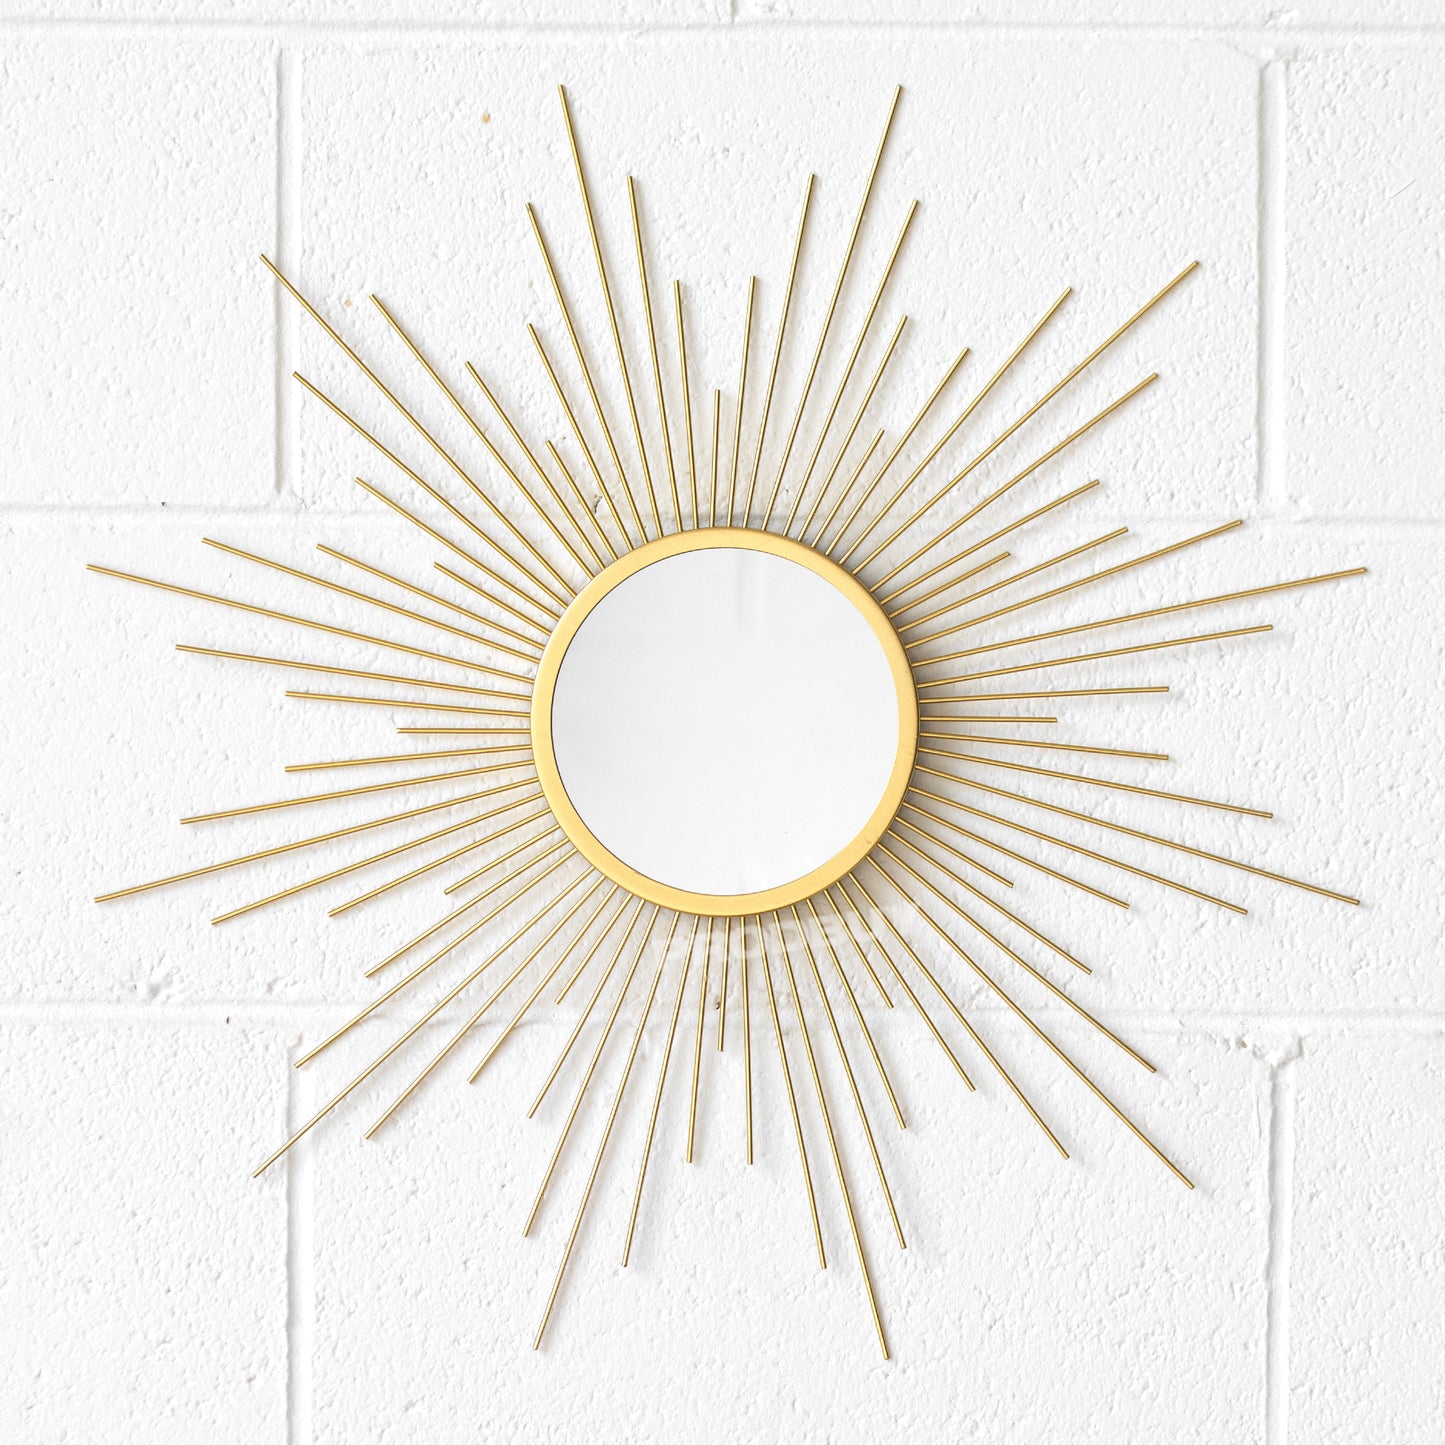 60cm Round Gold Sunburst Wall Mirror